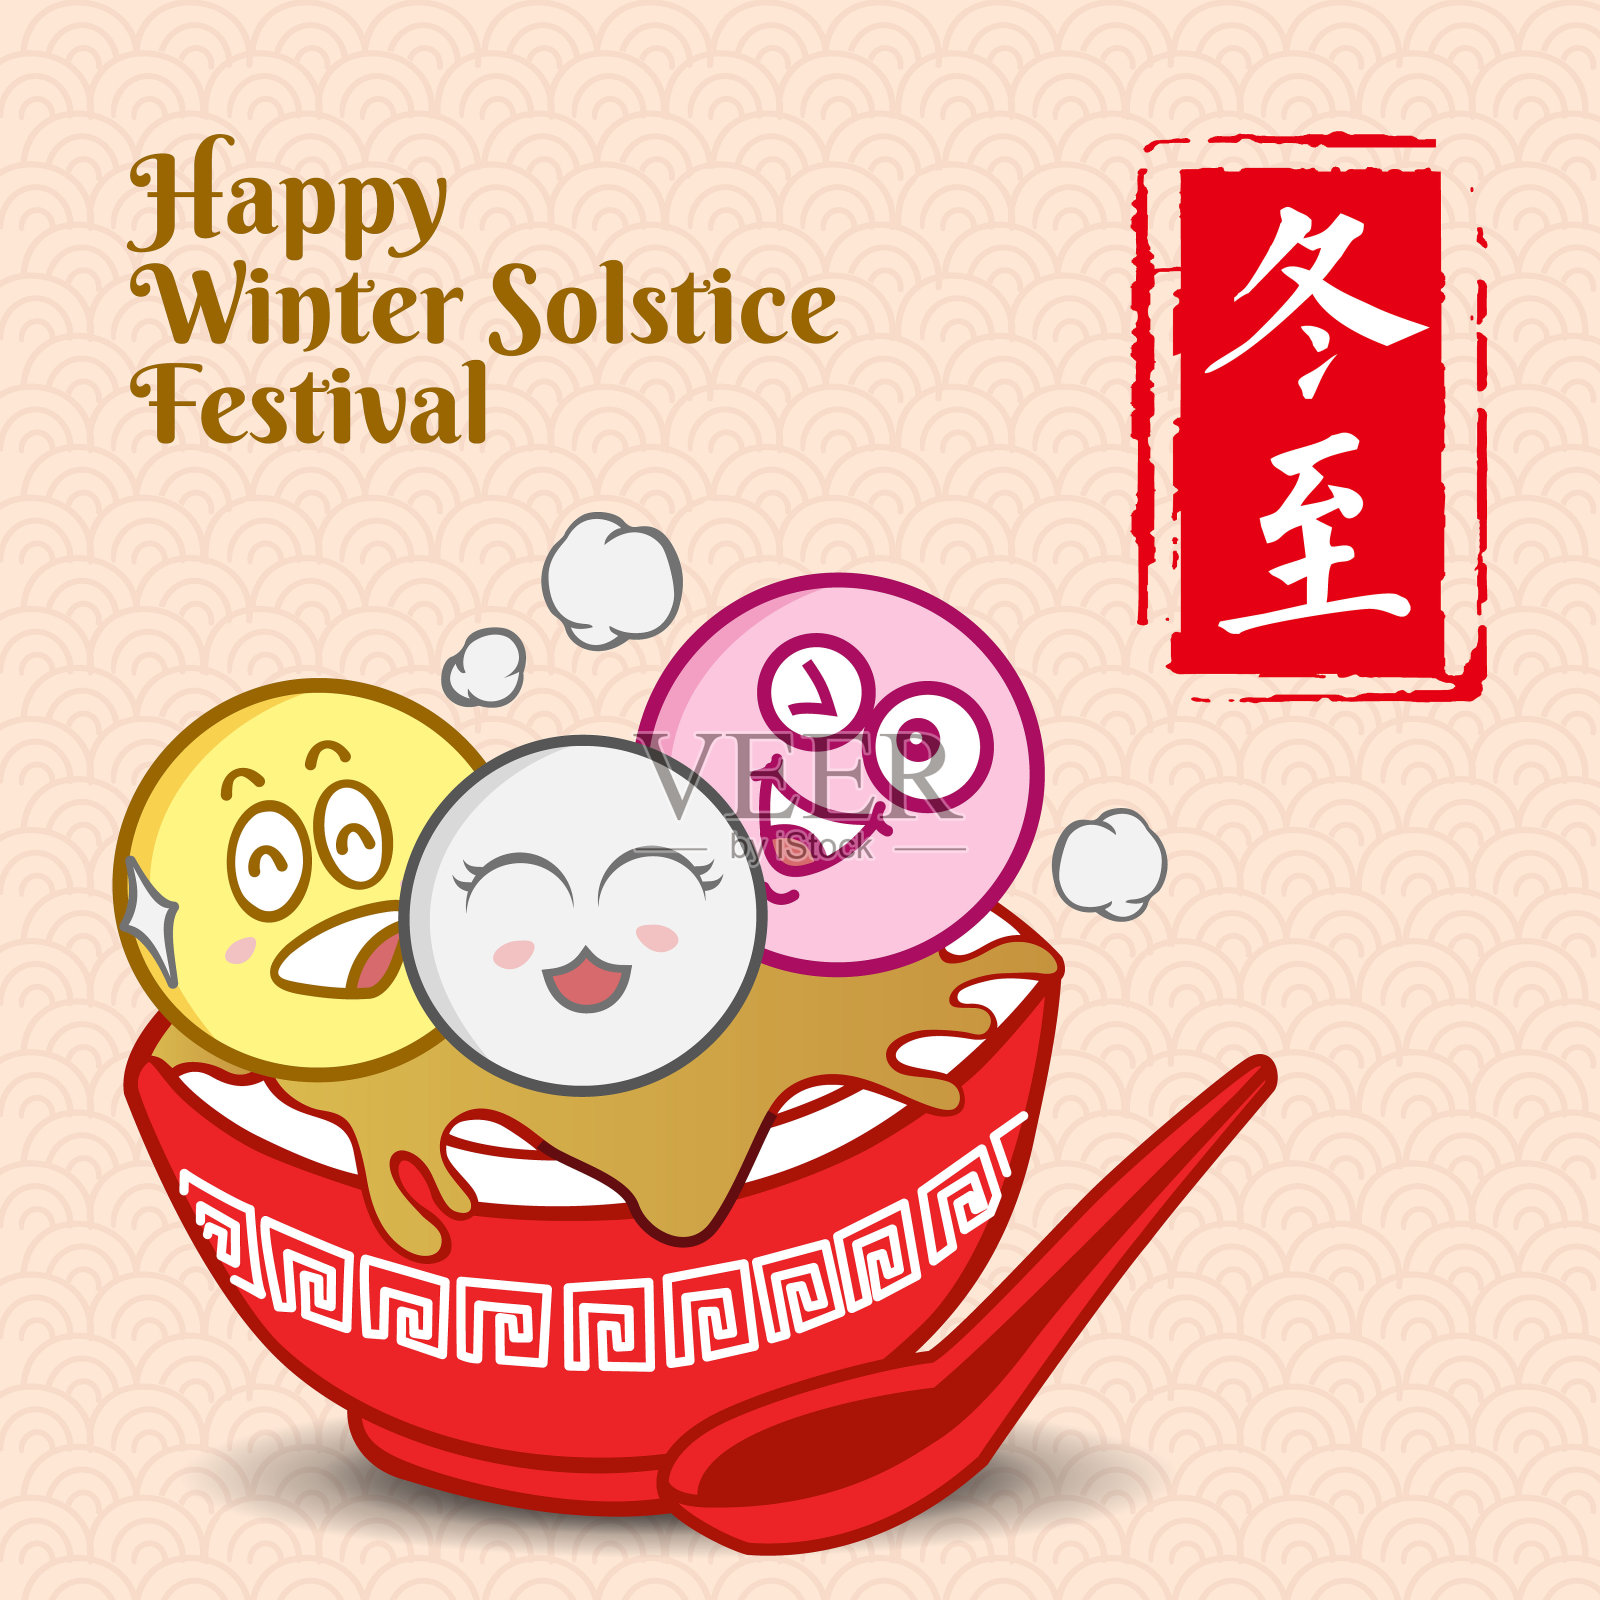 冬至的意思是冬至节。可爱的卡通汤圆家庭与勺子在矢量插图。(说明:冬至节、祝福)设计模板素材